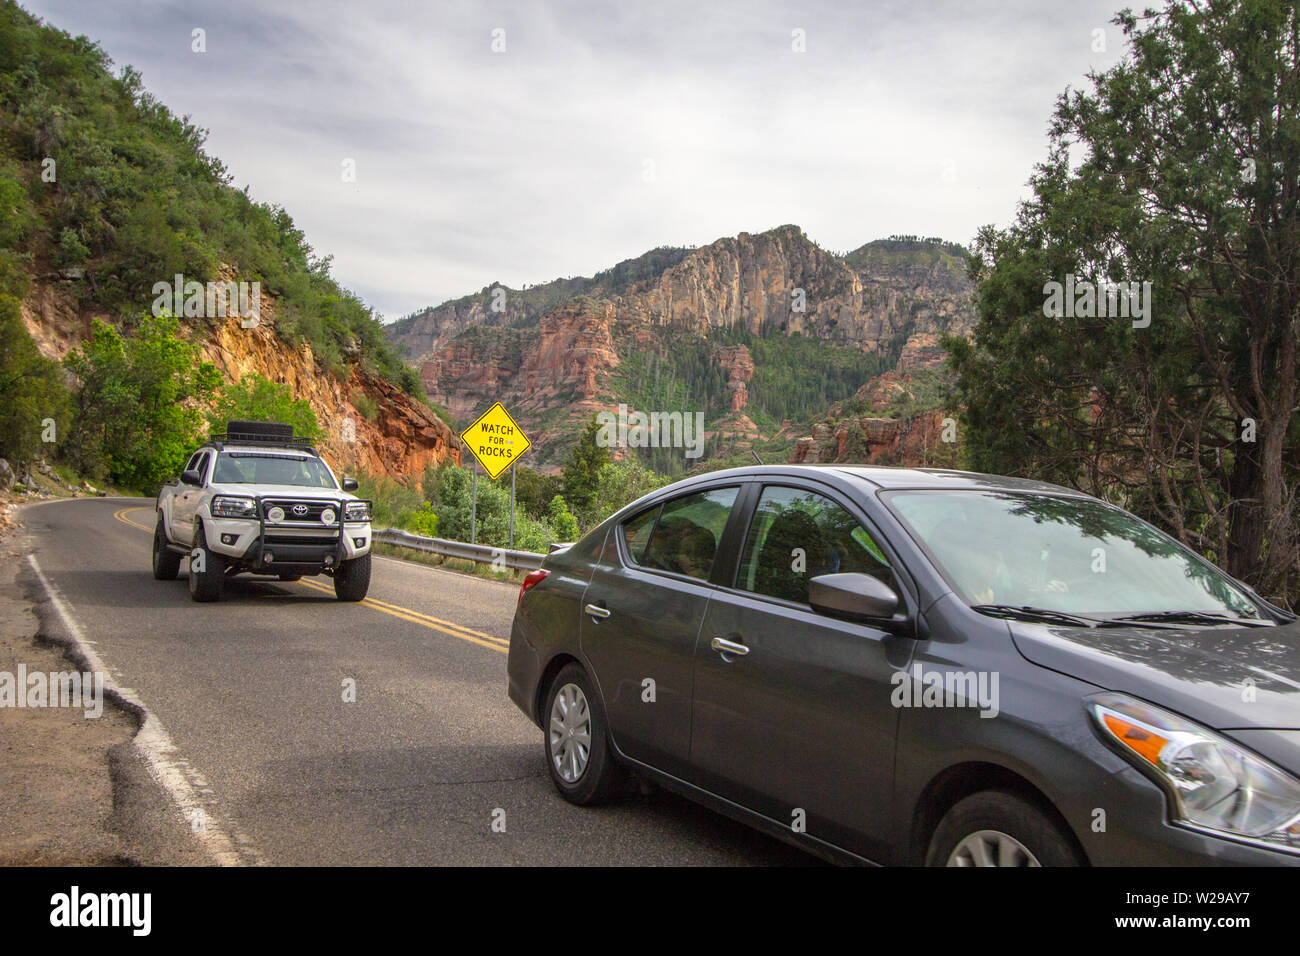 Sedona, Arizona, EE.UU. - 5 de mayo de 2019: Los coches se mueven para evitar baches y peatones en las estrechas y sinuosas carreteras de montaña de Sedona, Arizona, con un reloj Foto de stock